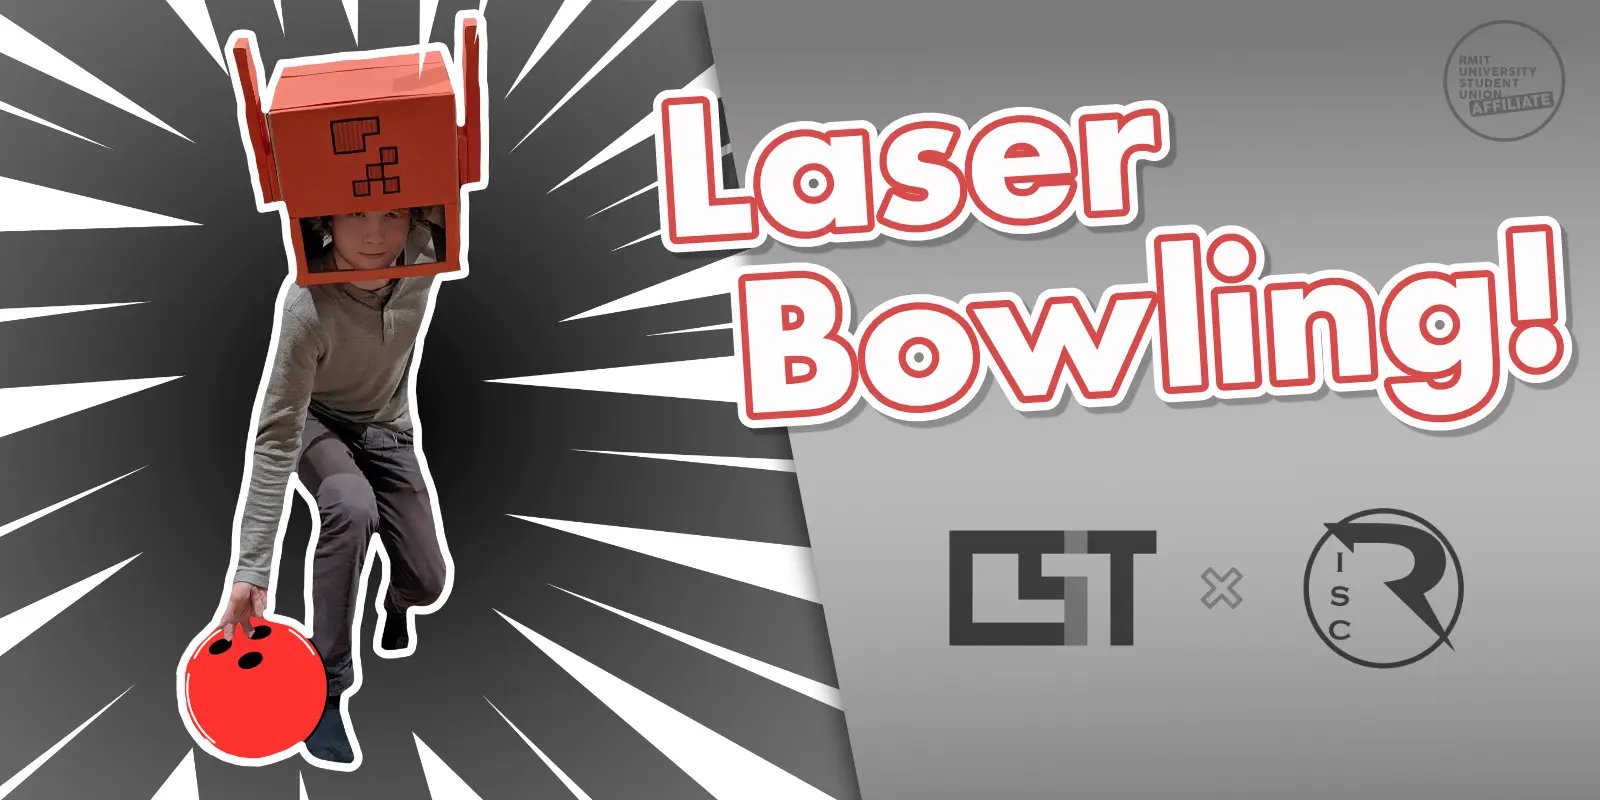 Laser Bowling